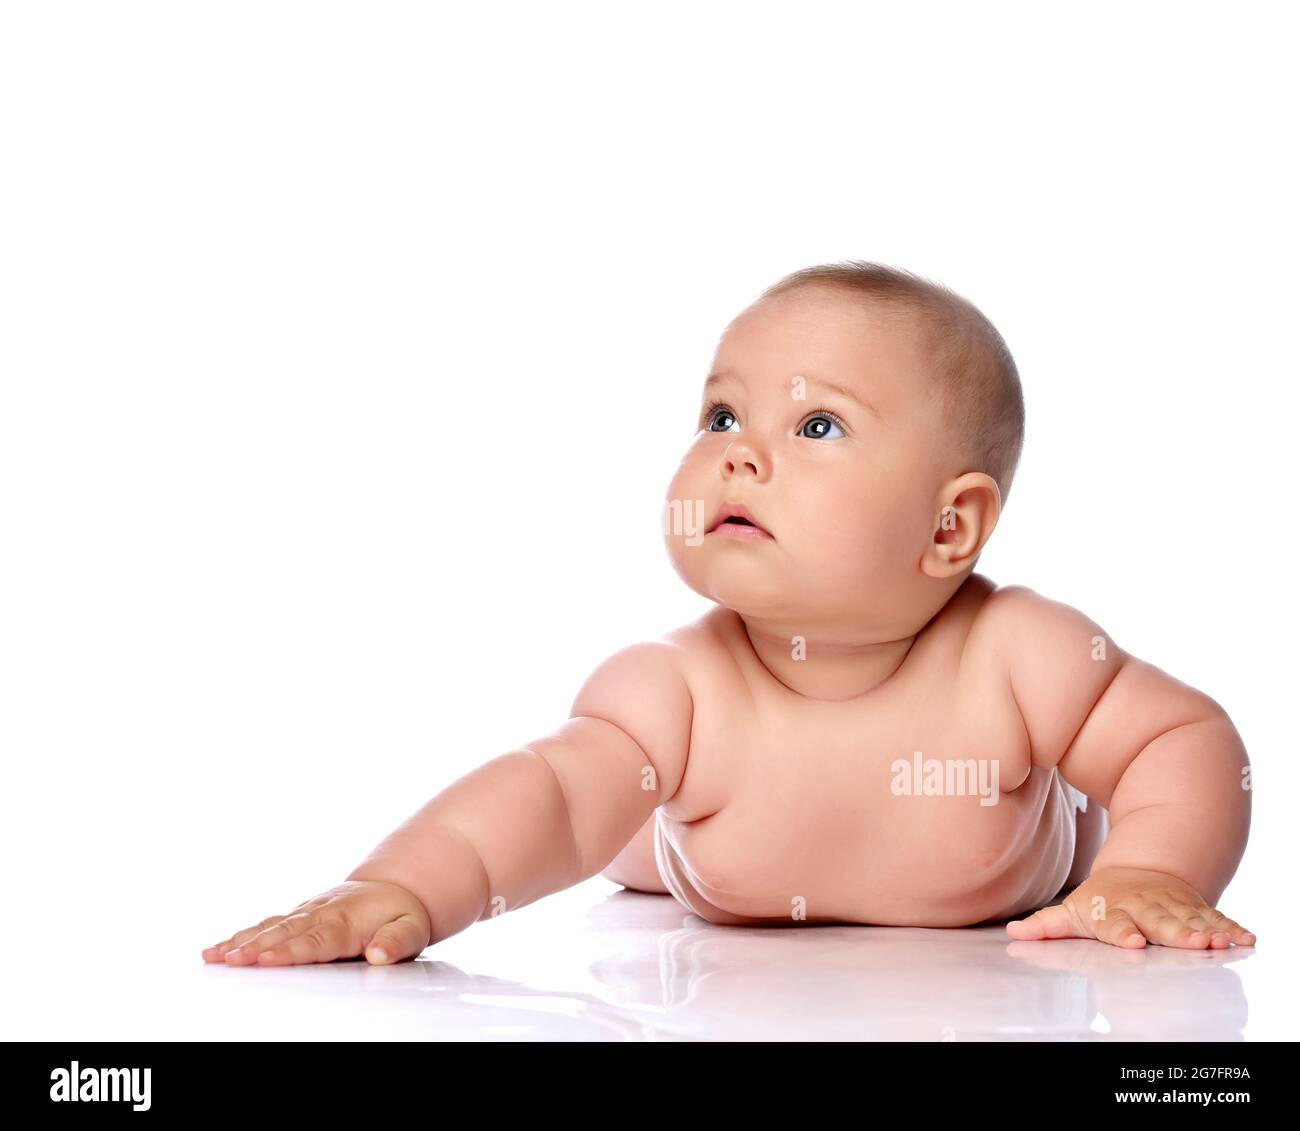 Ruhig und konzentriert Kleinkind Baby Mädchen Kind in Windel liegt auf ihrem Bauch mit ausgestrecktem Arm und Blick nach oben Stockfoto